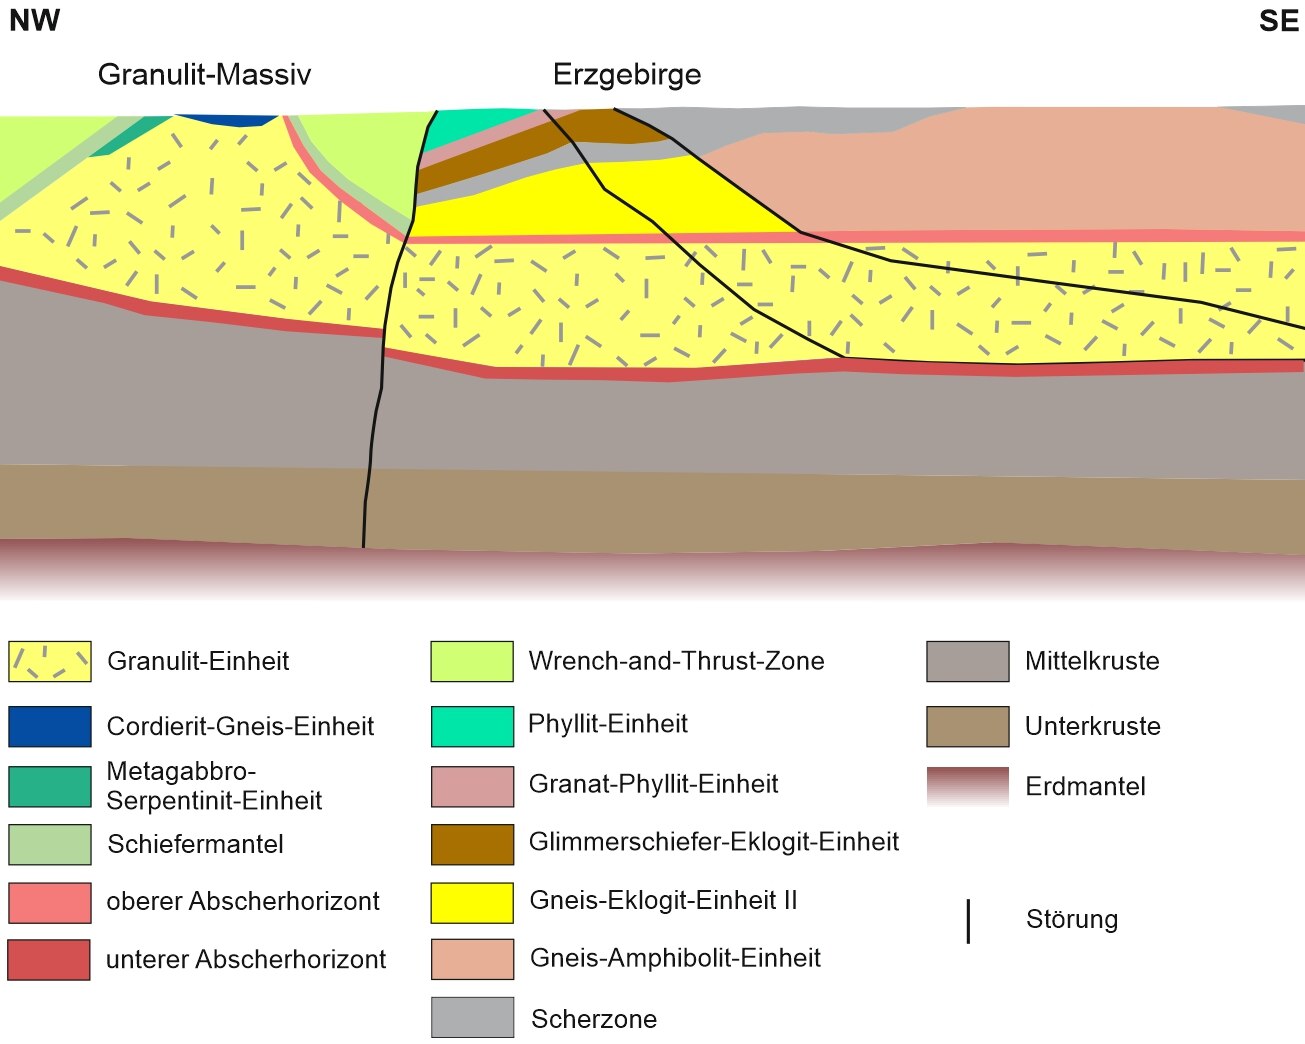 Profilschnitt durch die Erdkruste von Granulit-Massiv und Erzgebirge nach Stephan et al. (2015).